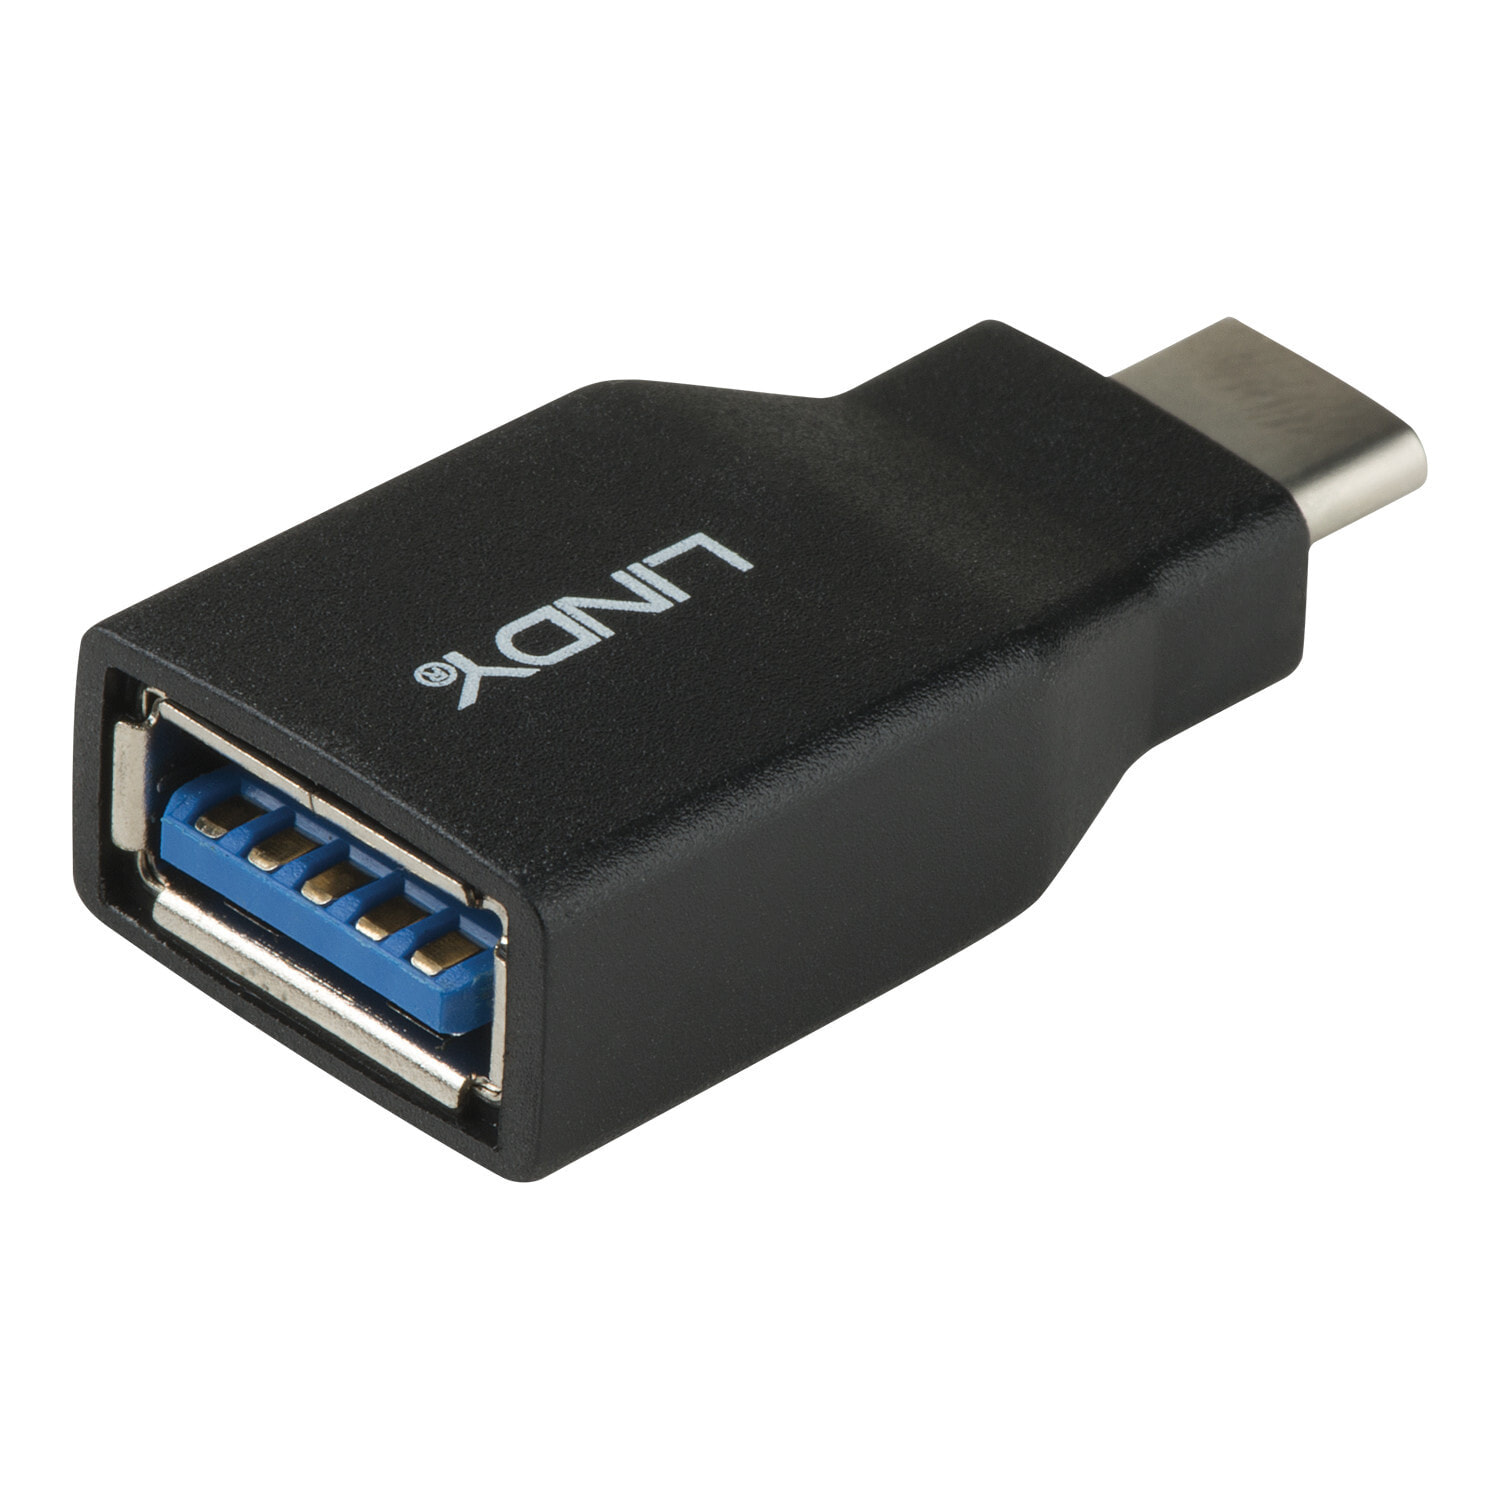 Usb 3.3. USB 3.2 gen1 Type-a x3. USB 3.2 gen1 Type-c. USB 3.2 gen1 Type-a - USB 3.2 gen1 Type-c. USB 3.2 gen1 Micro-b.